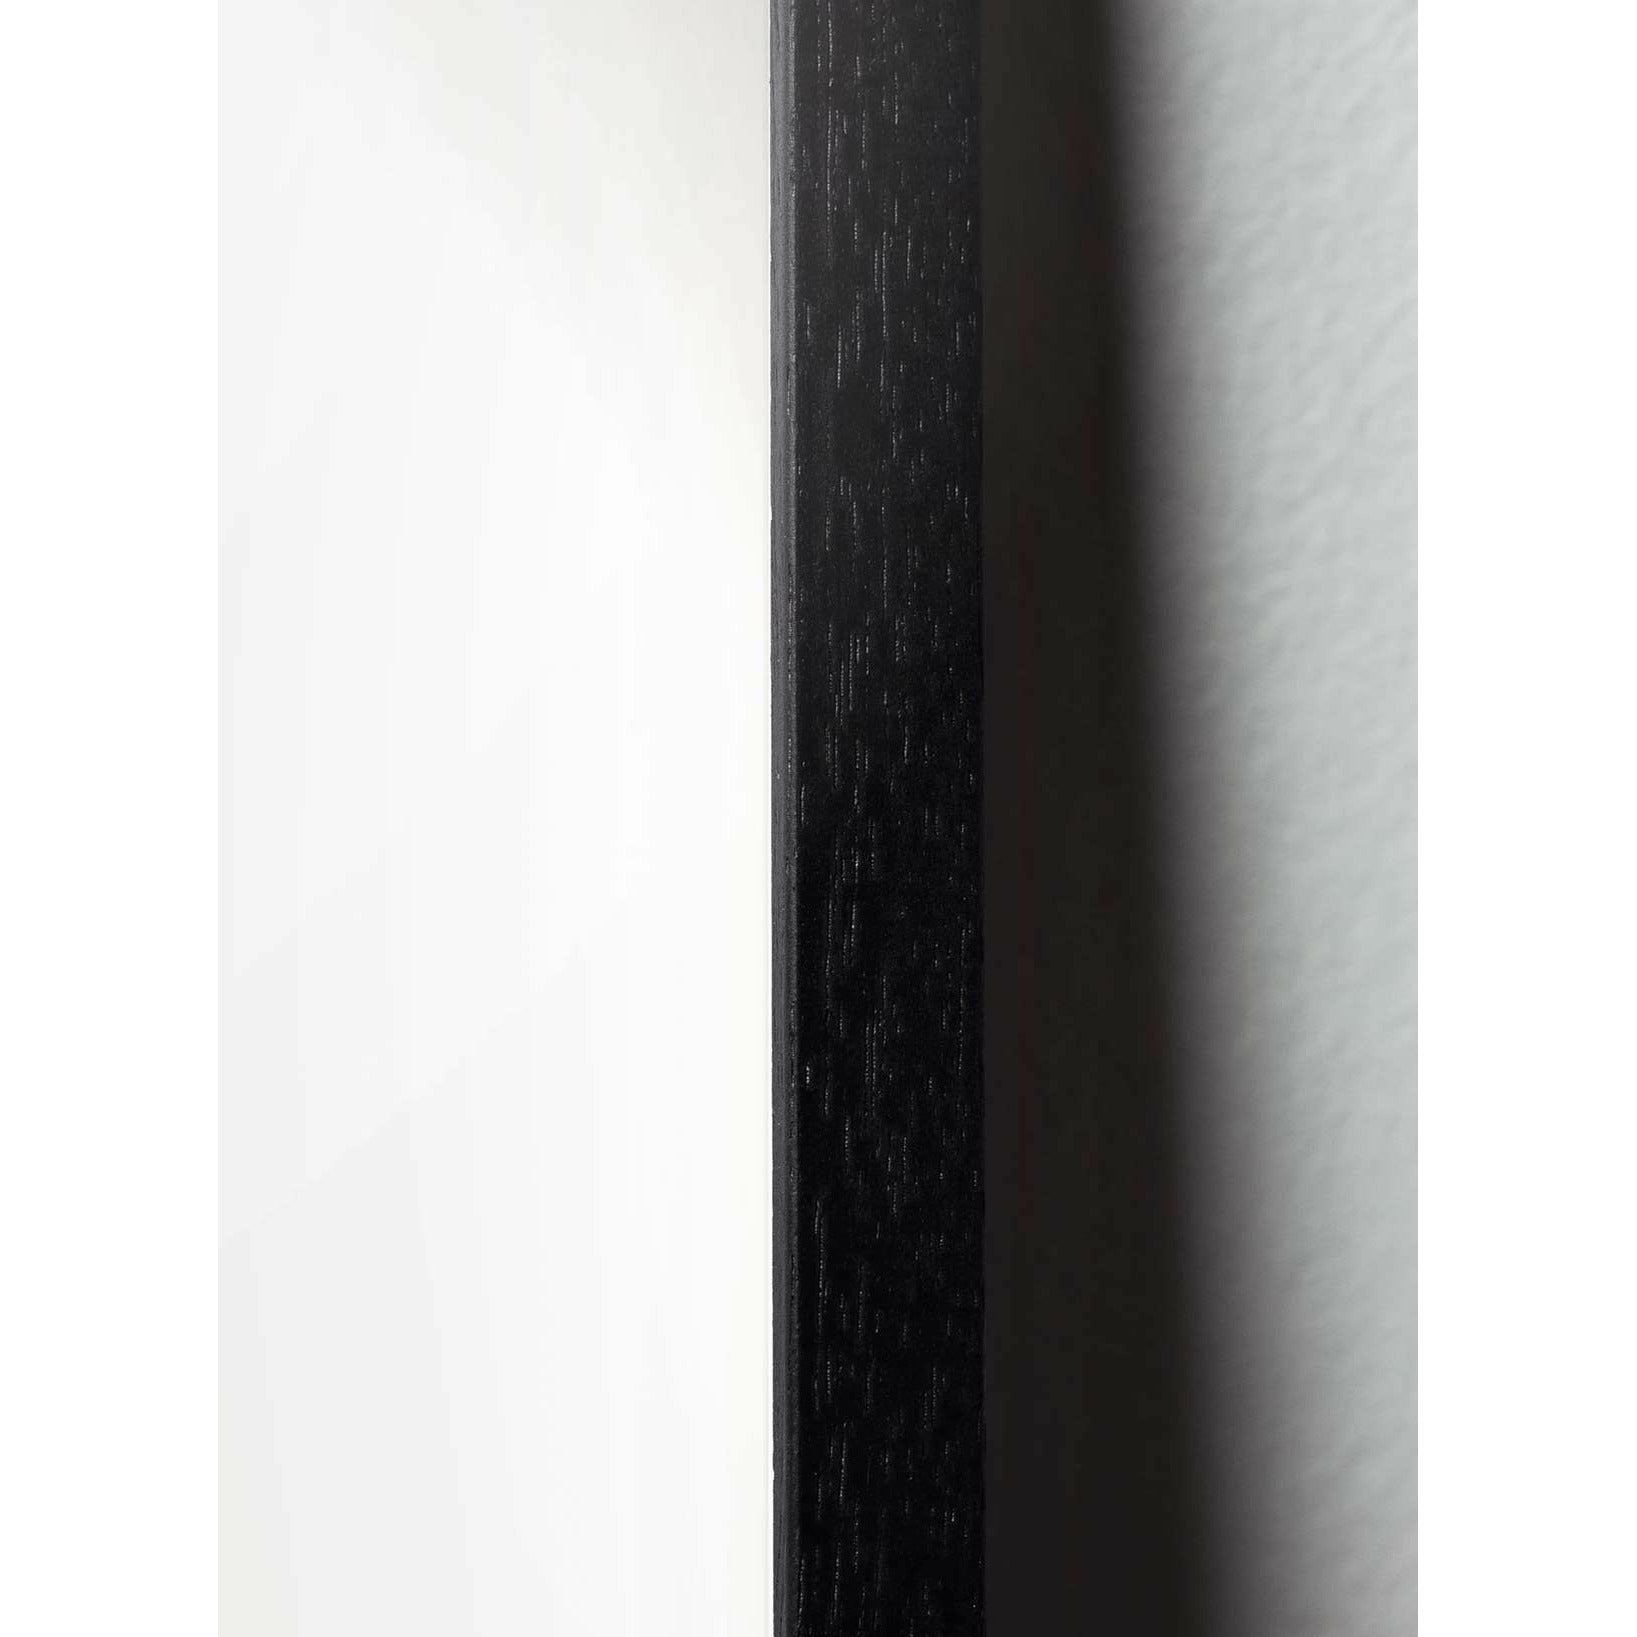 Póster de diseño de diseño de oso de peluche de ideas, marco hecho de madera lacada negra A5, gris